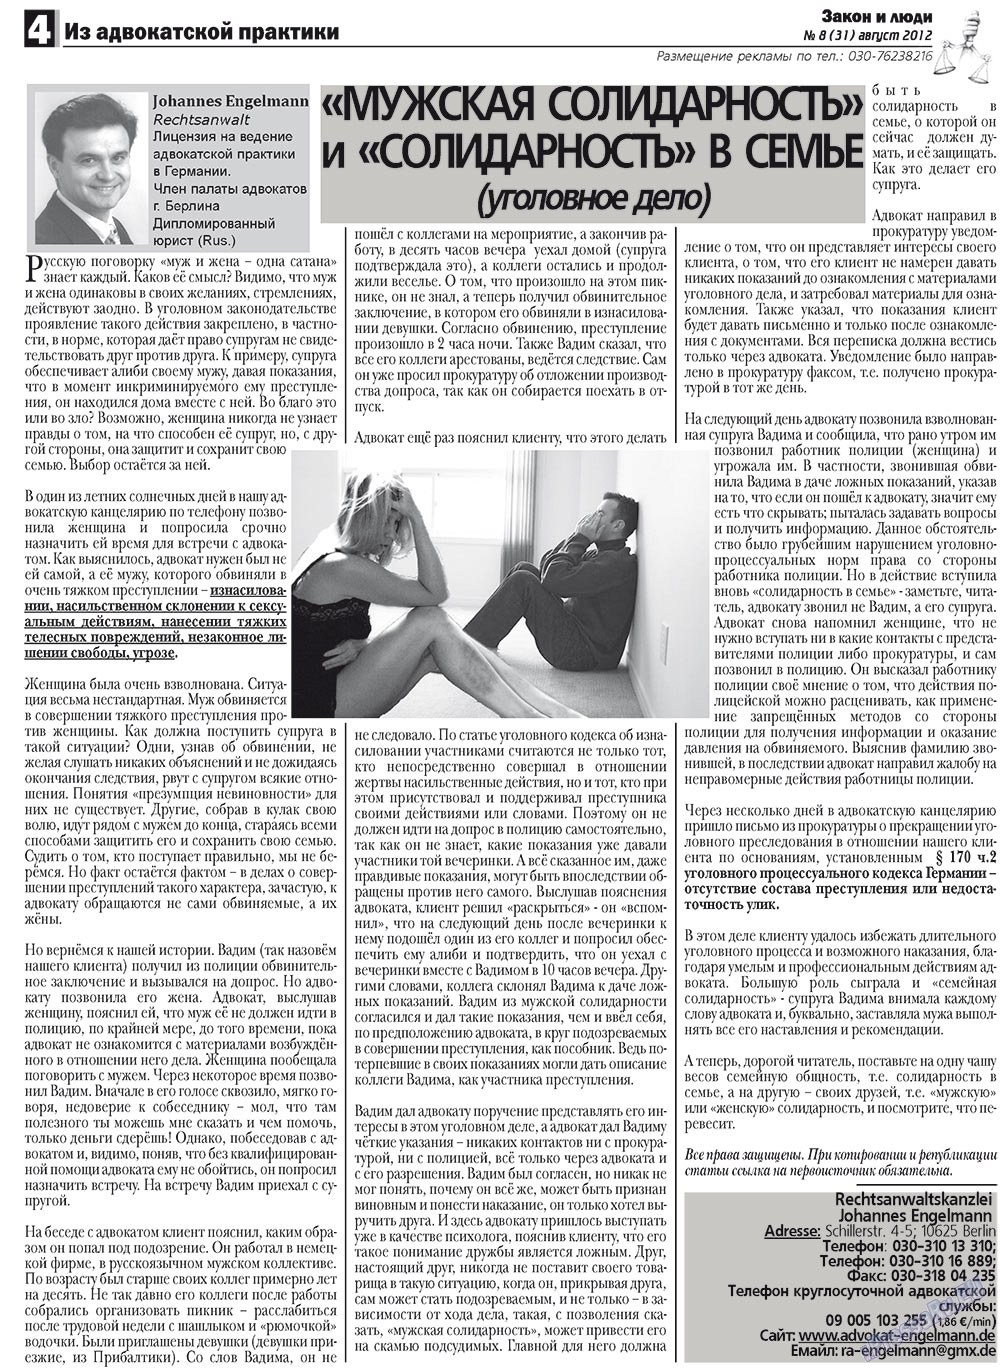 Закон и люди, газета. 2012 №8 стр.4